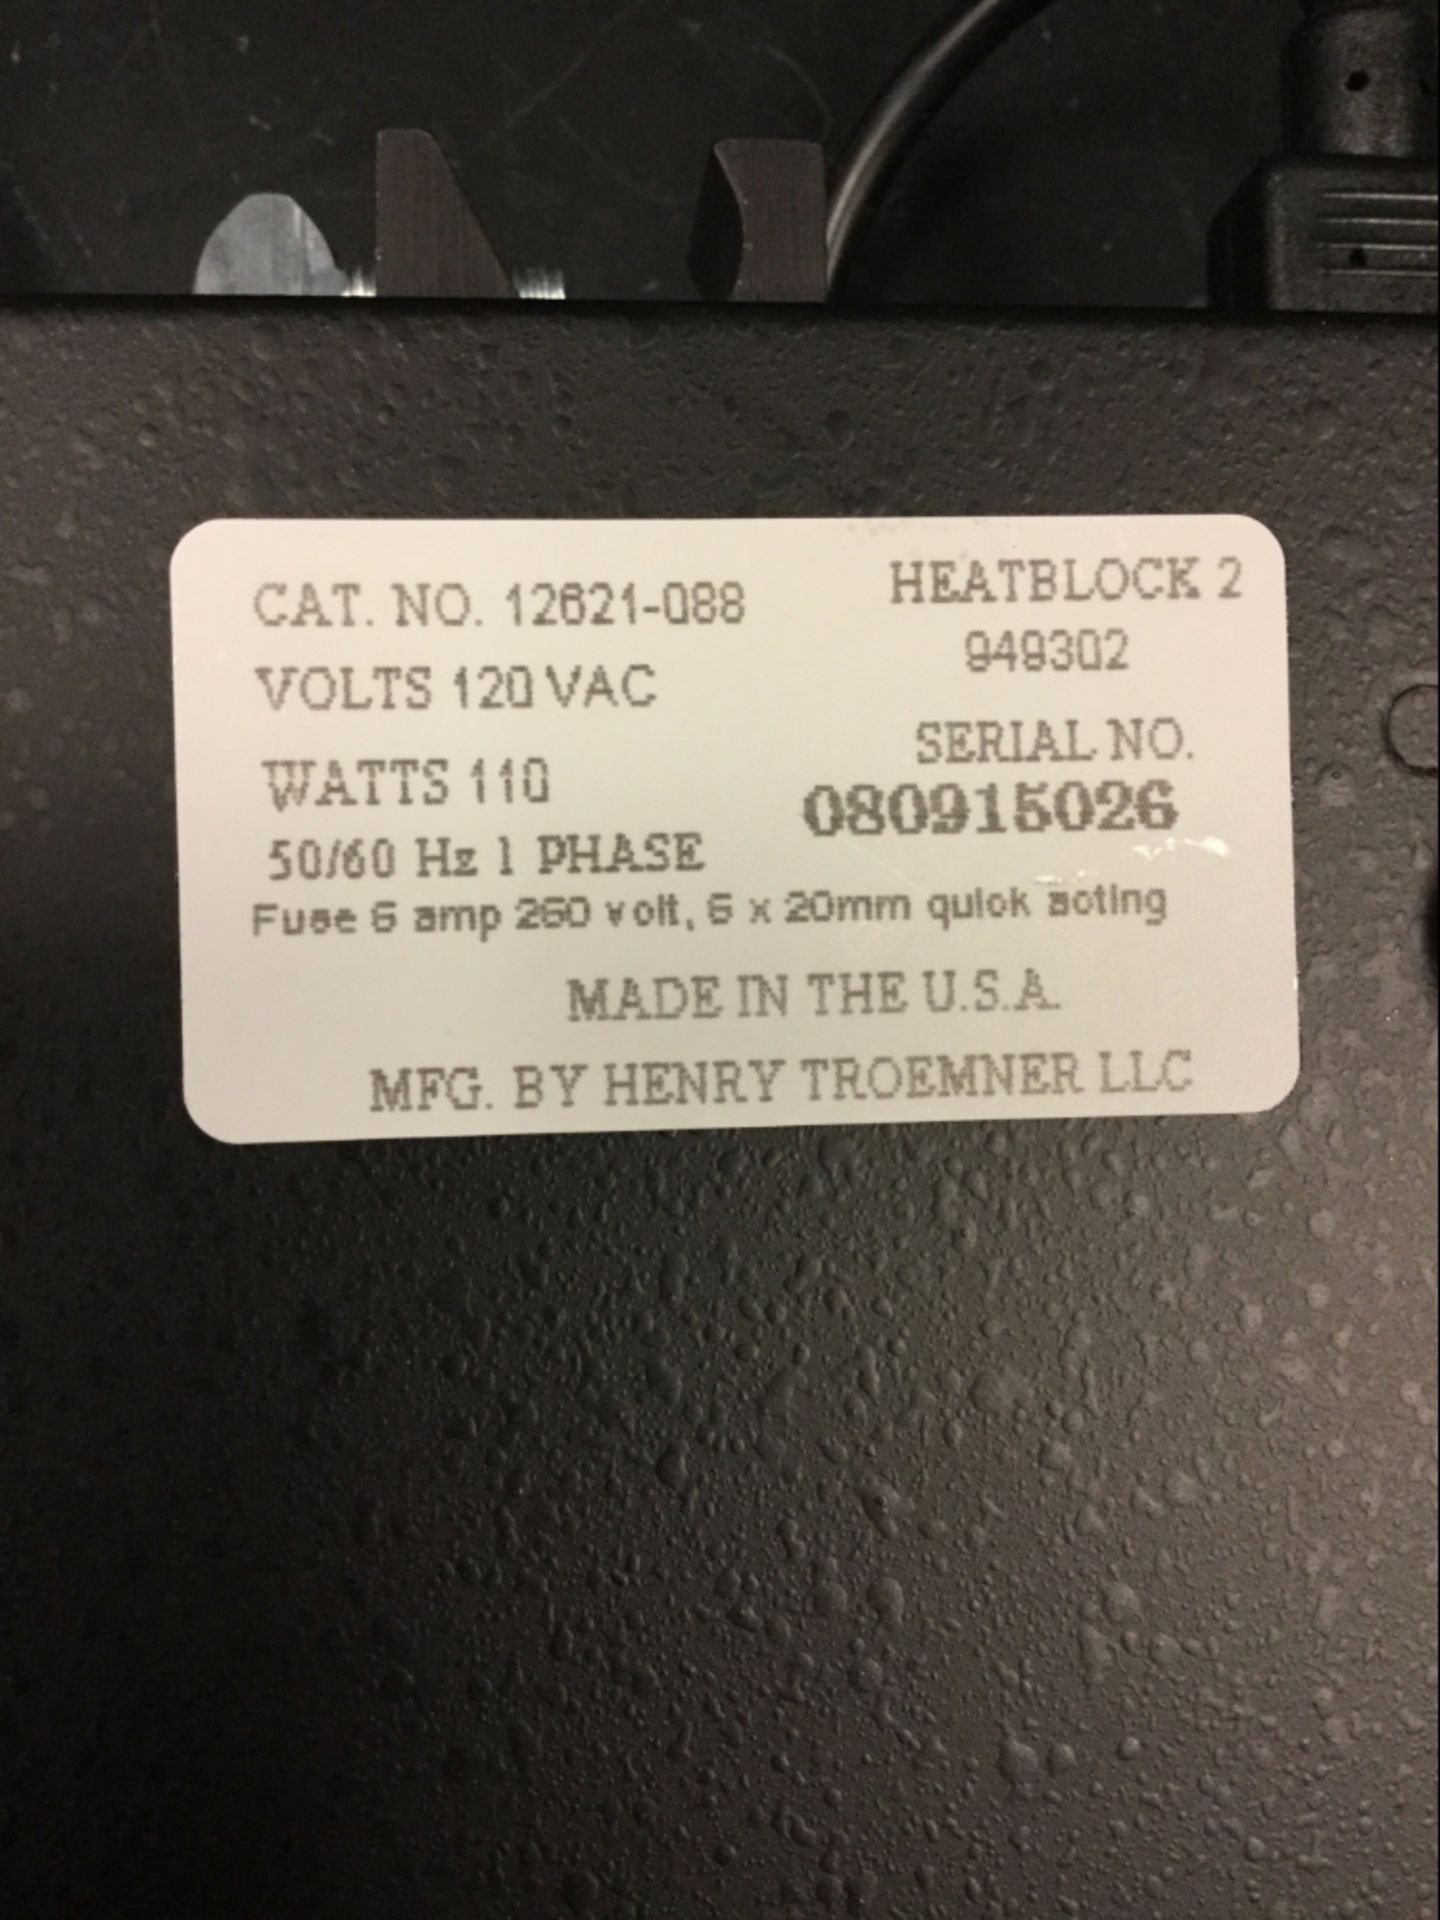 VWR Heatblock 2 Block Heater - Image 2 of 2